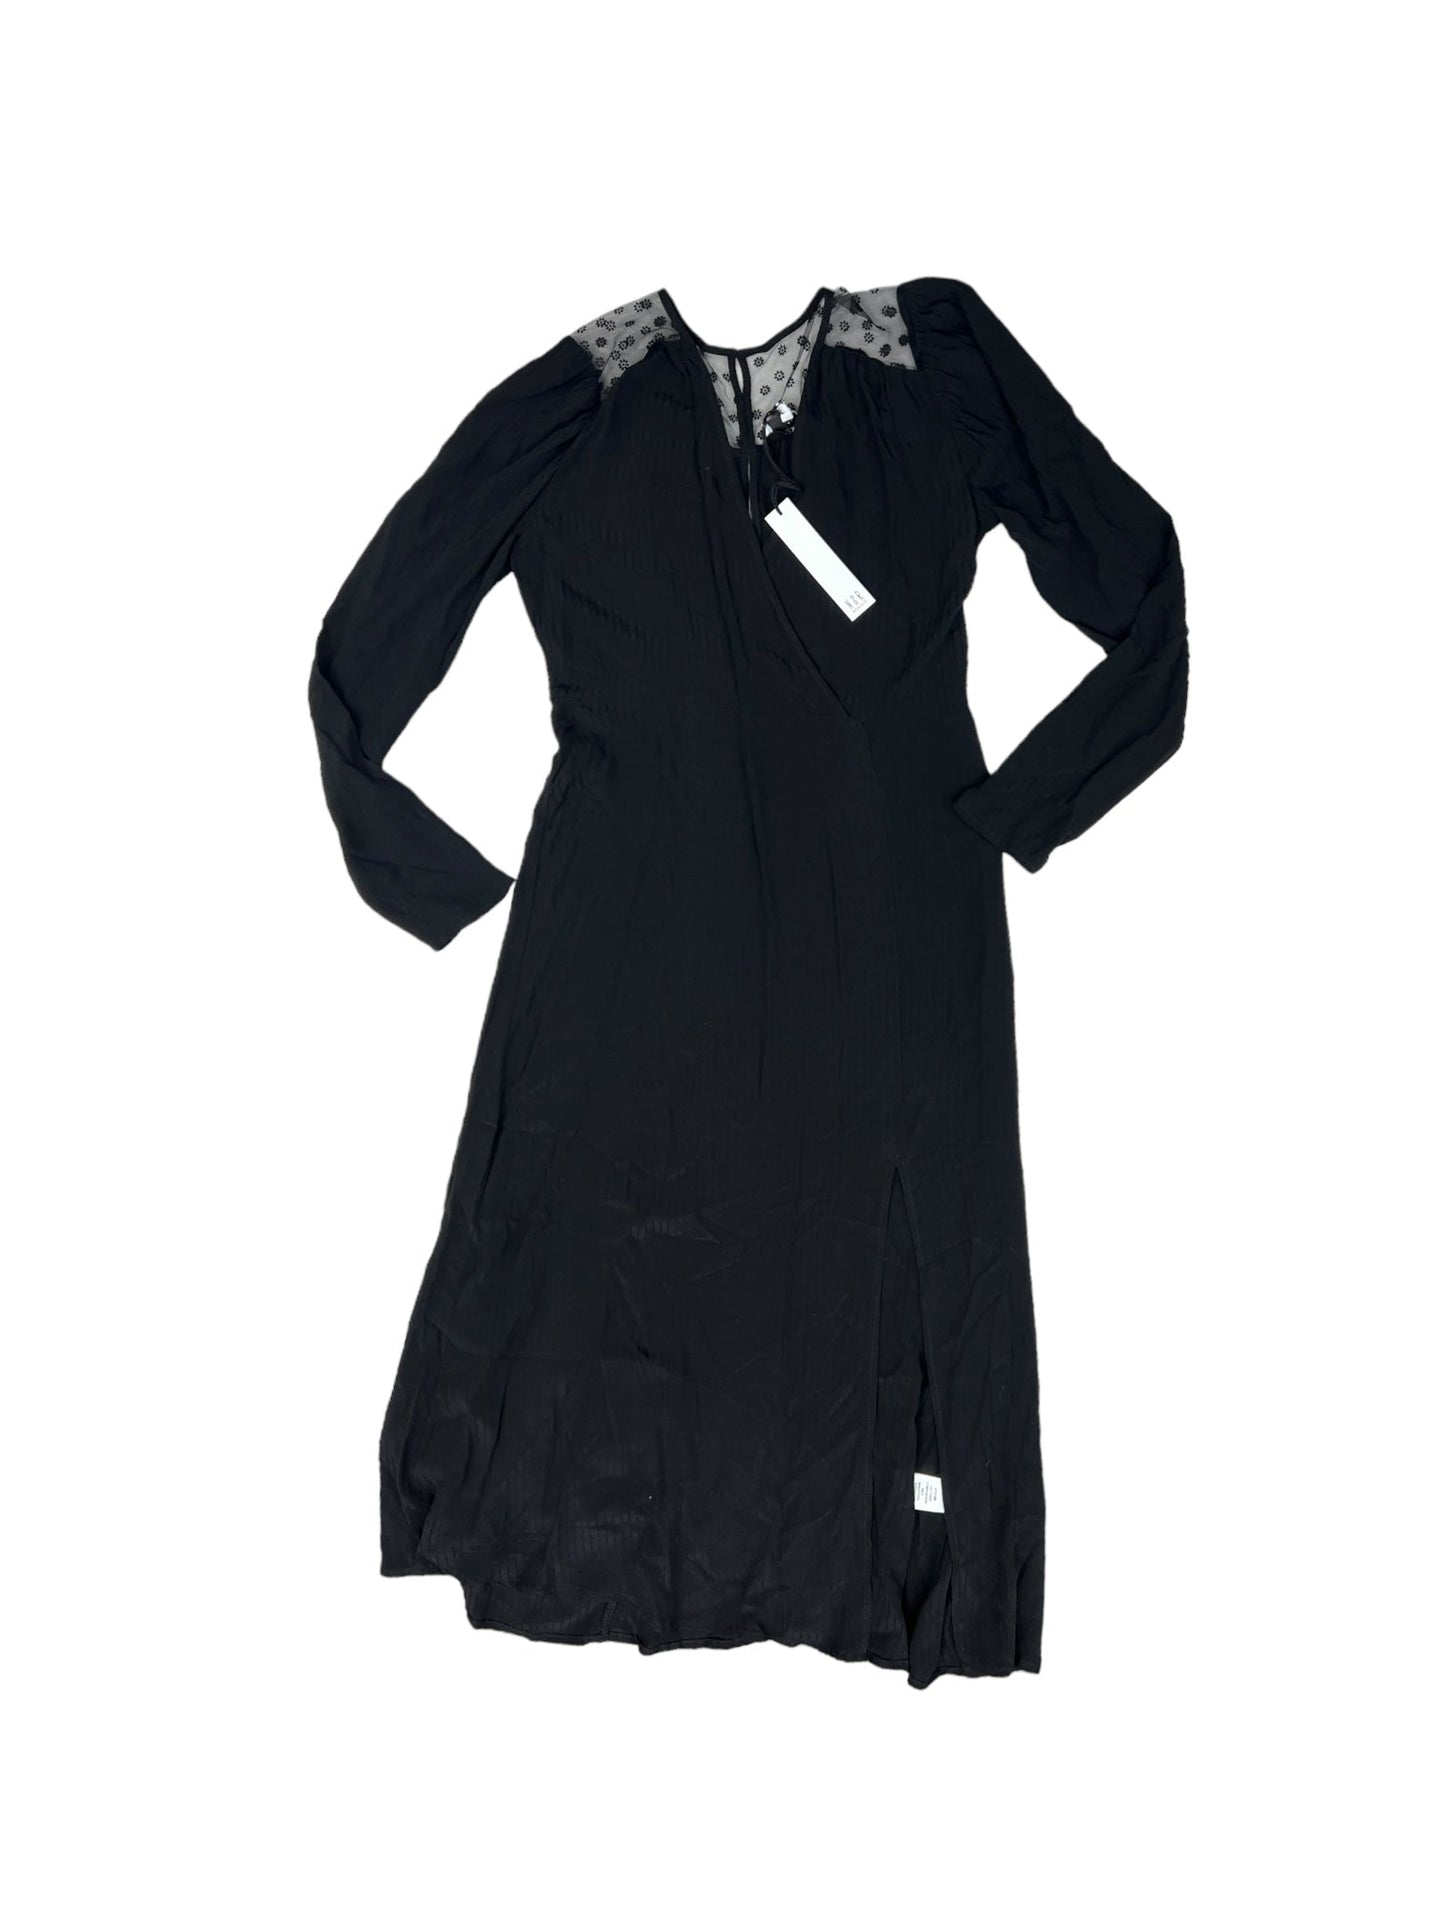 Black Dress Casual Maxi Clothes Mentor, Size L